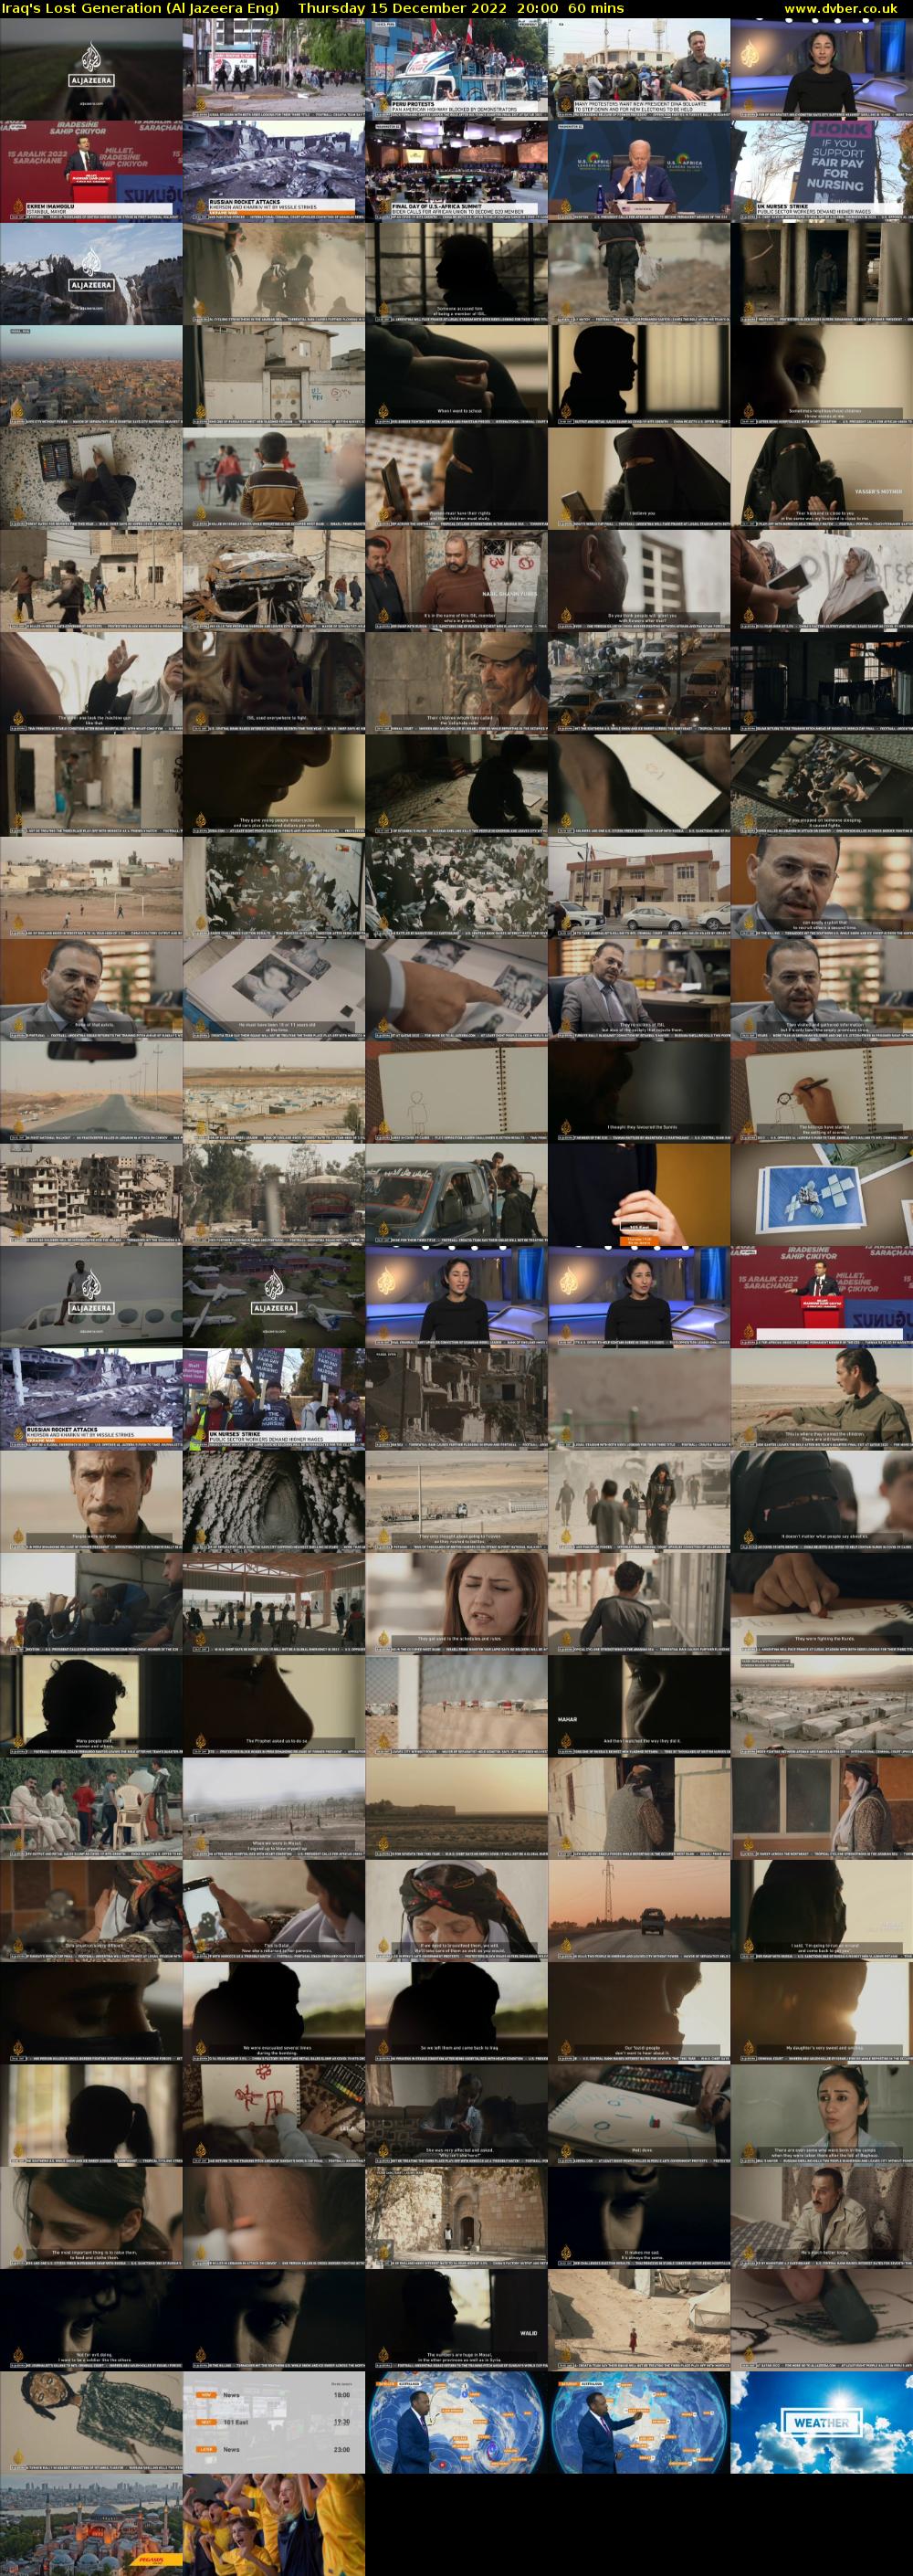 Iraq's Lost Generation (Al Jazeera Eng) Thursday 15 December 2022 20:00 - 21:00